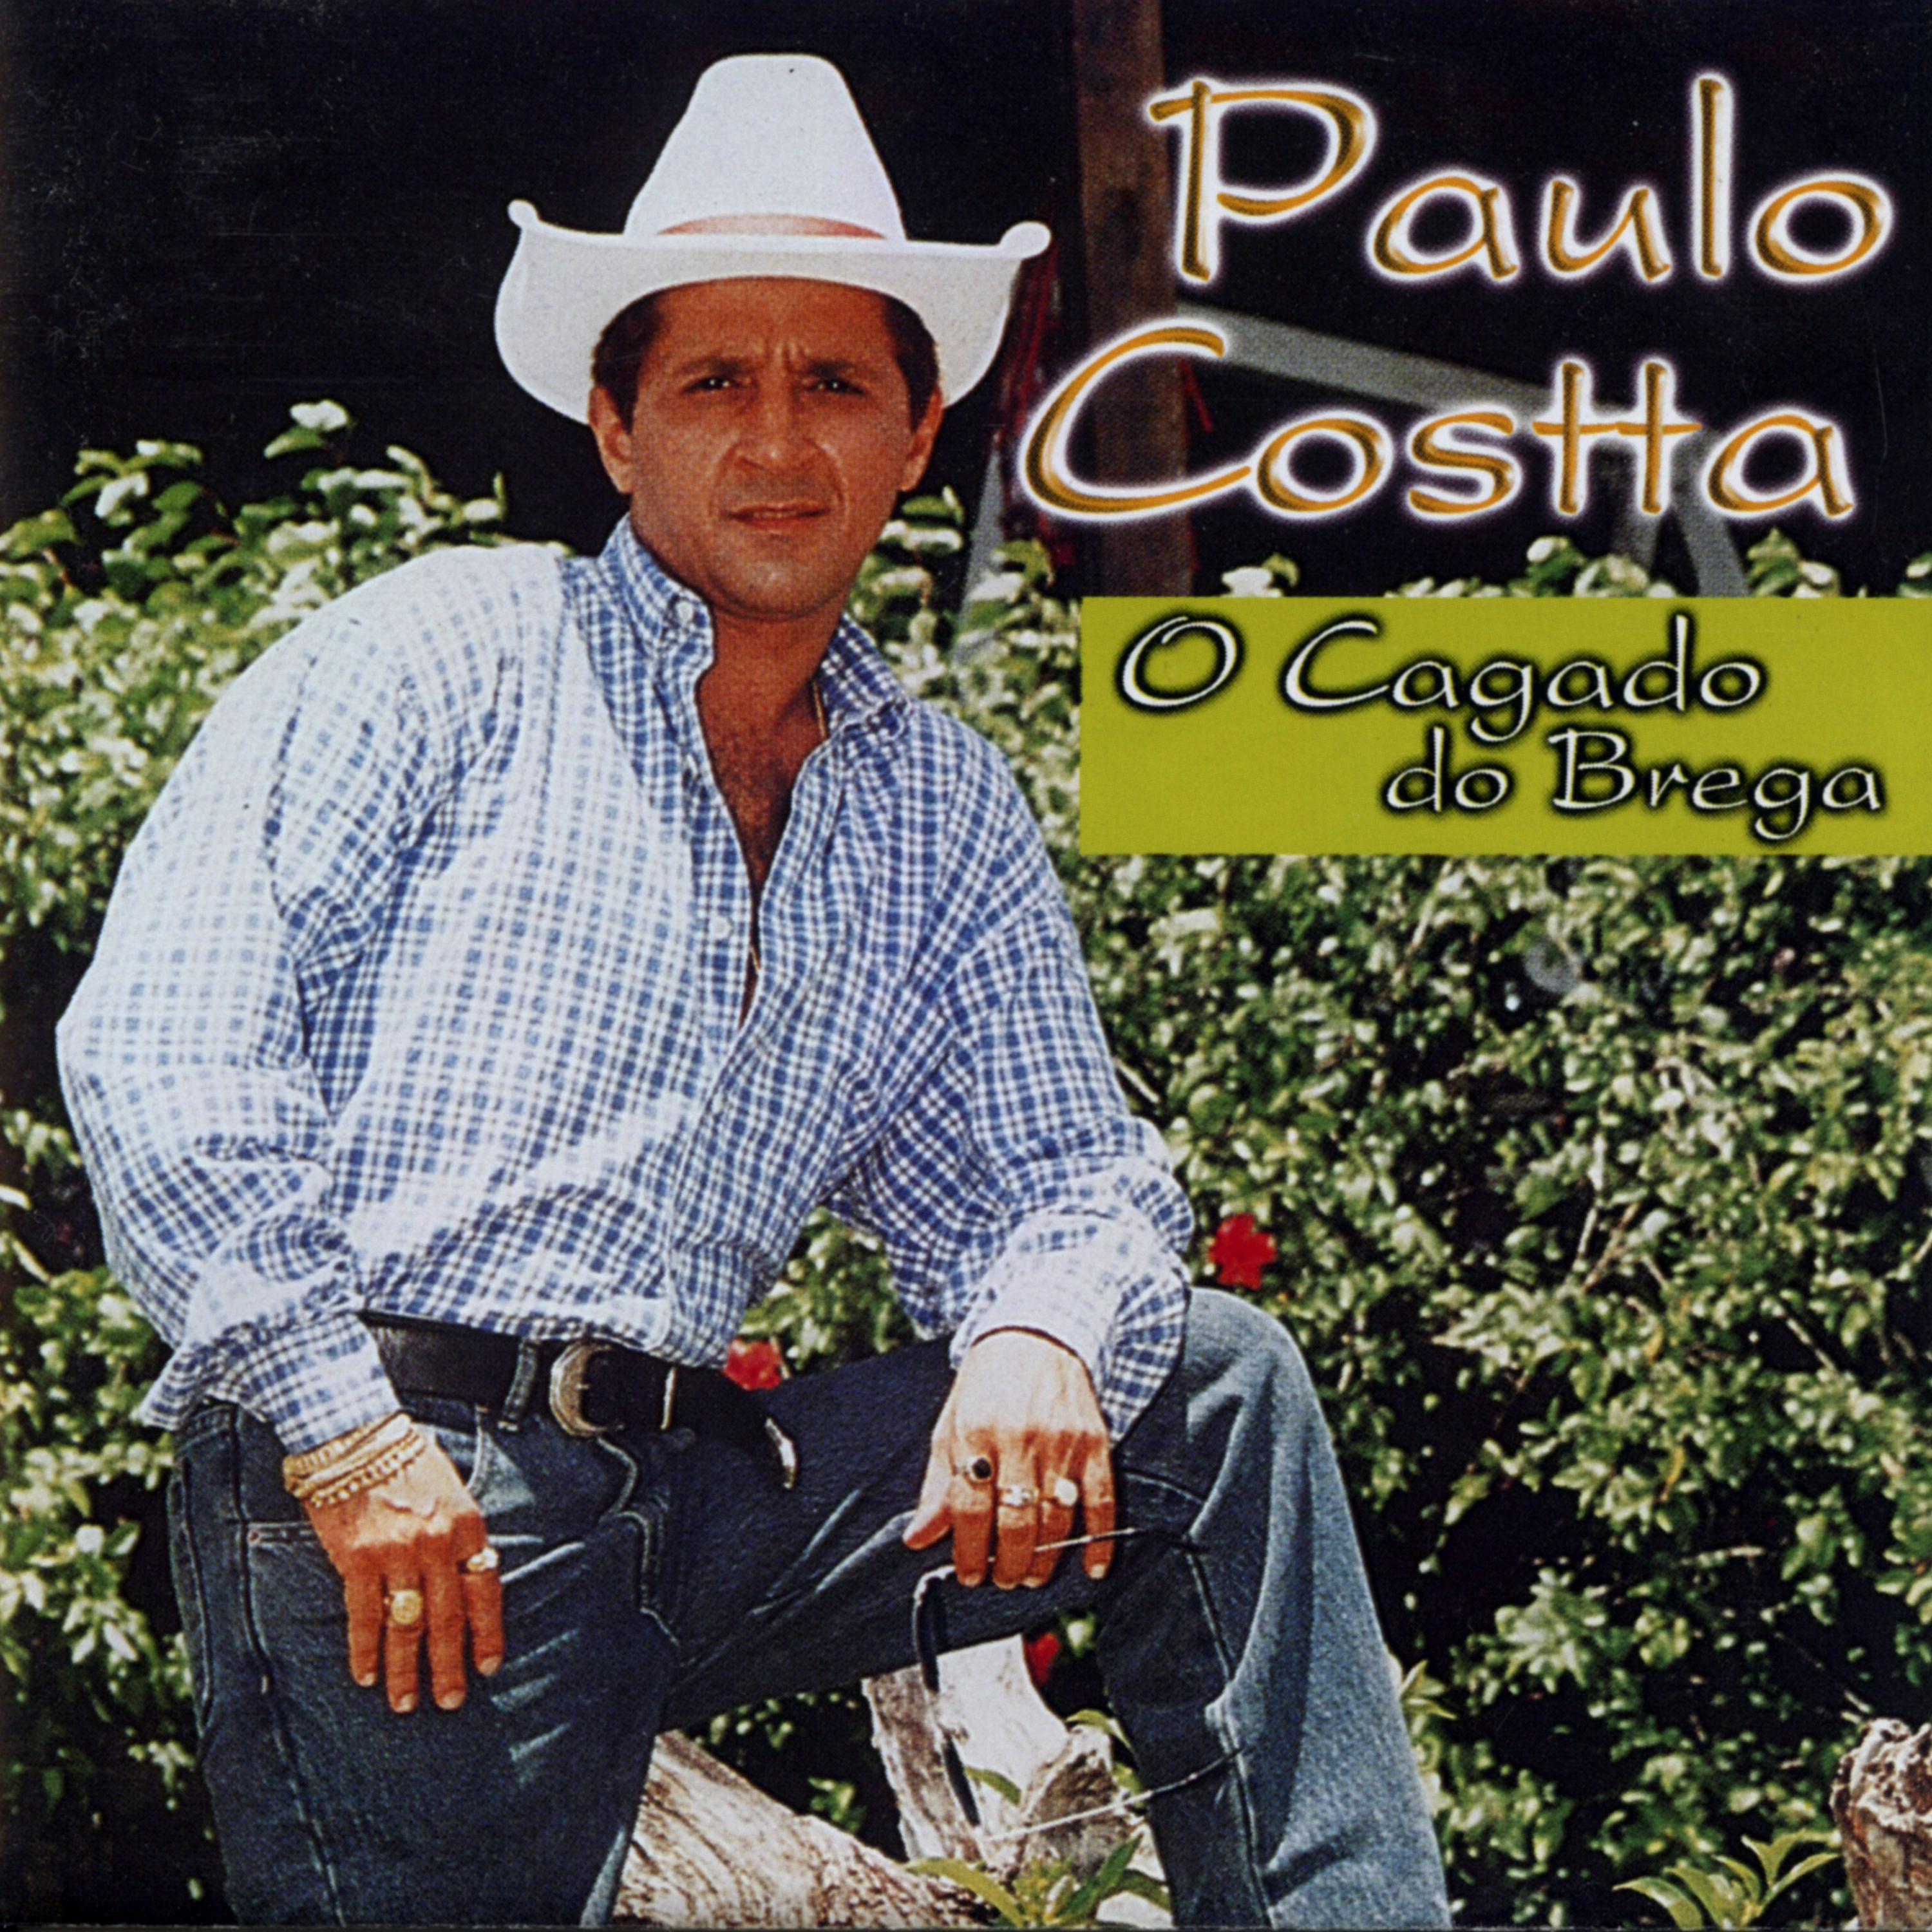 Paulo Costta - Estou Cagado